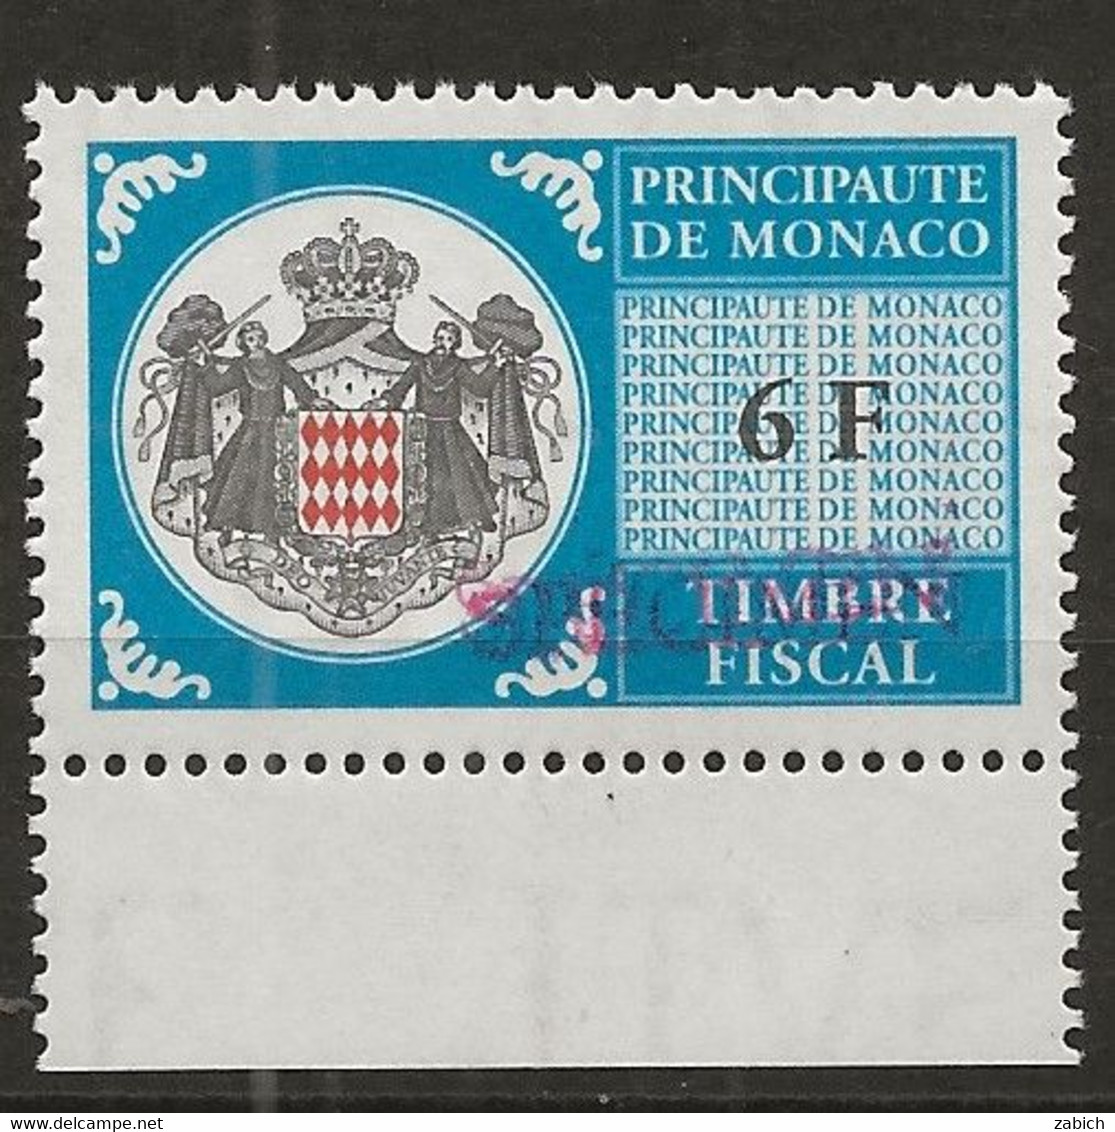 TIMBRES FISCAUX DE MONACO SERIE UNIFIEE N° 101 6F Bleu Rare Surchargé Specimen Neuf Gomme Mnh (**) - Fiscale Zegels